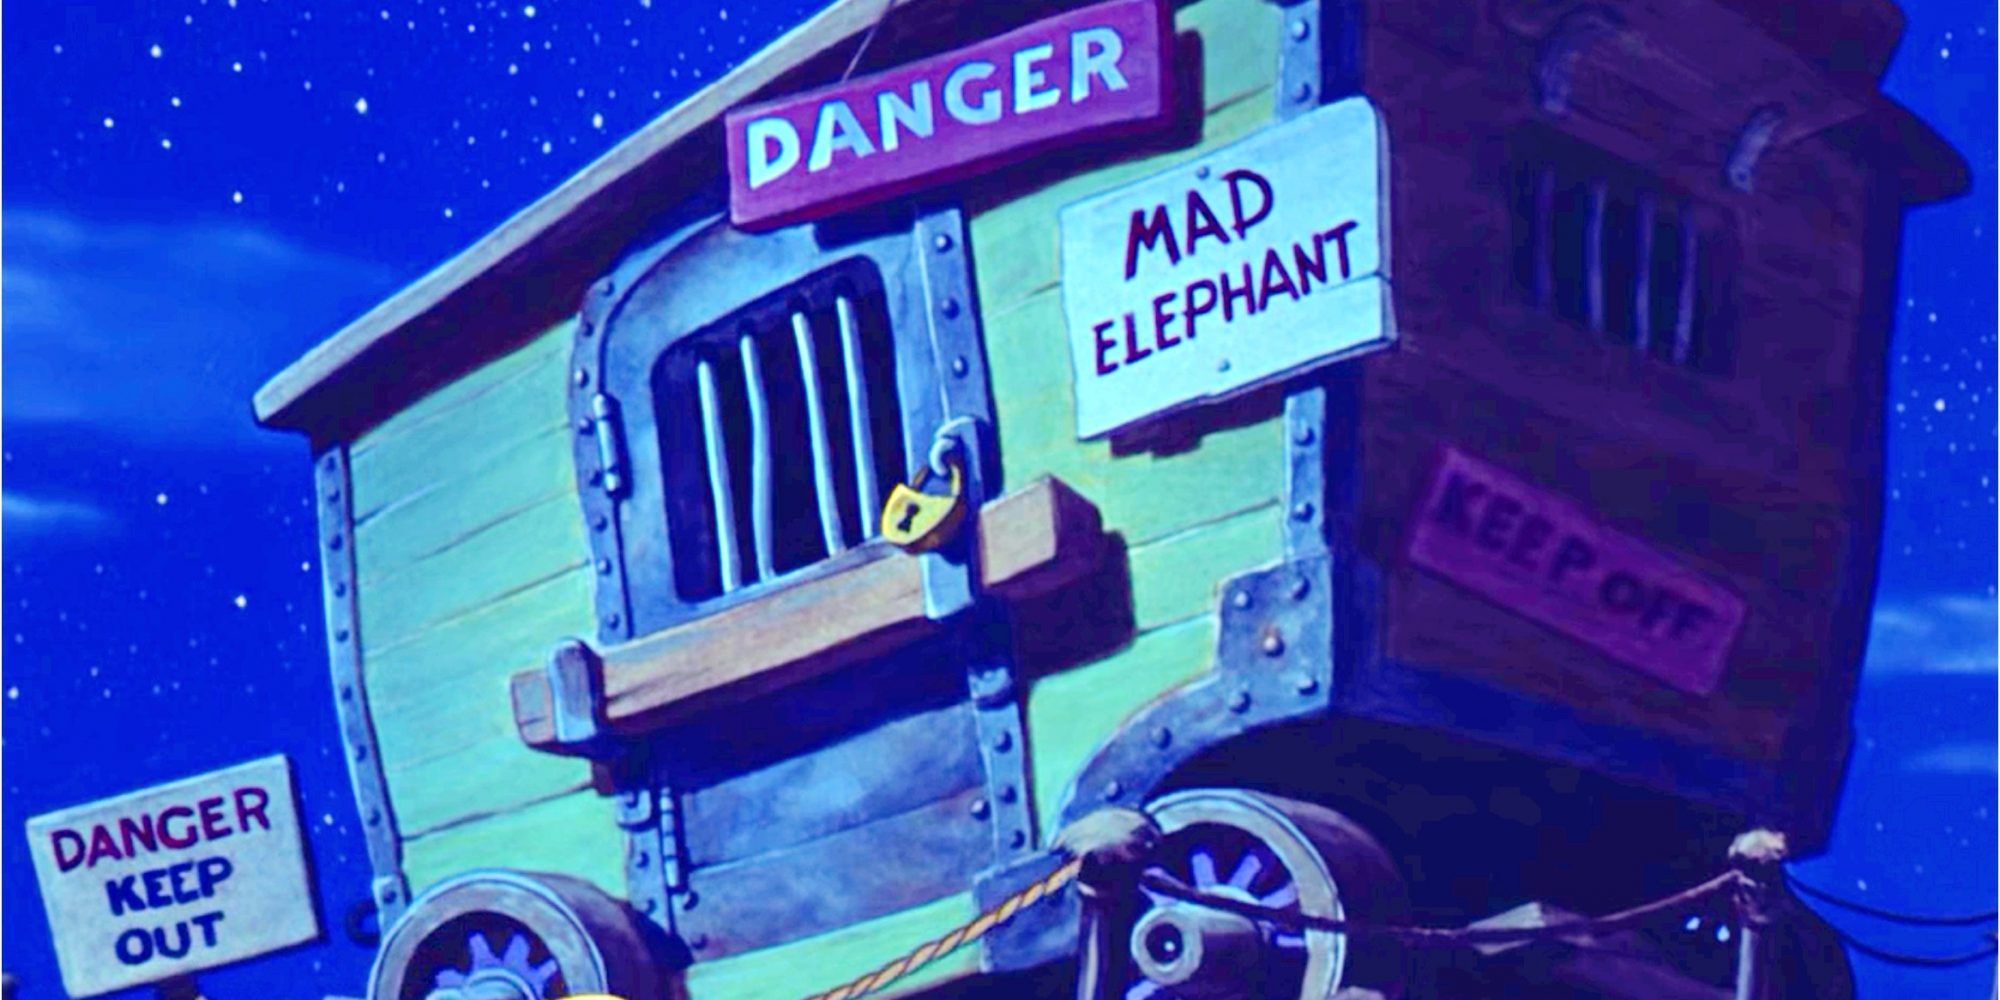 Mrs Jumbo Dumbo Cage Mad Elephant e1652748093200